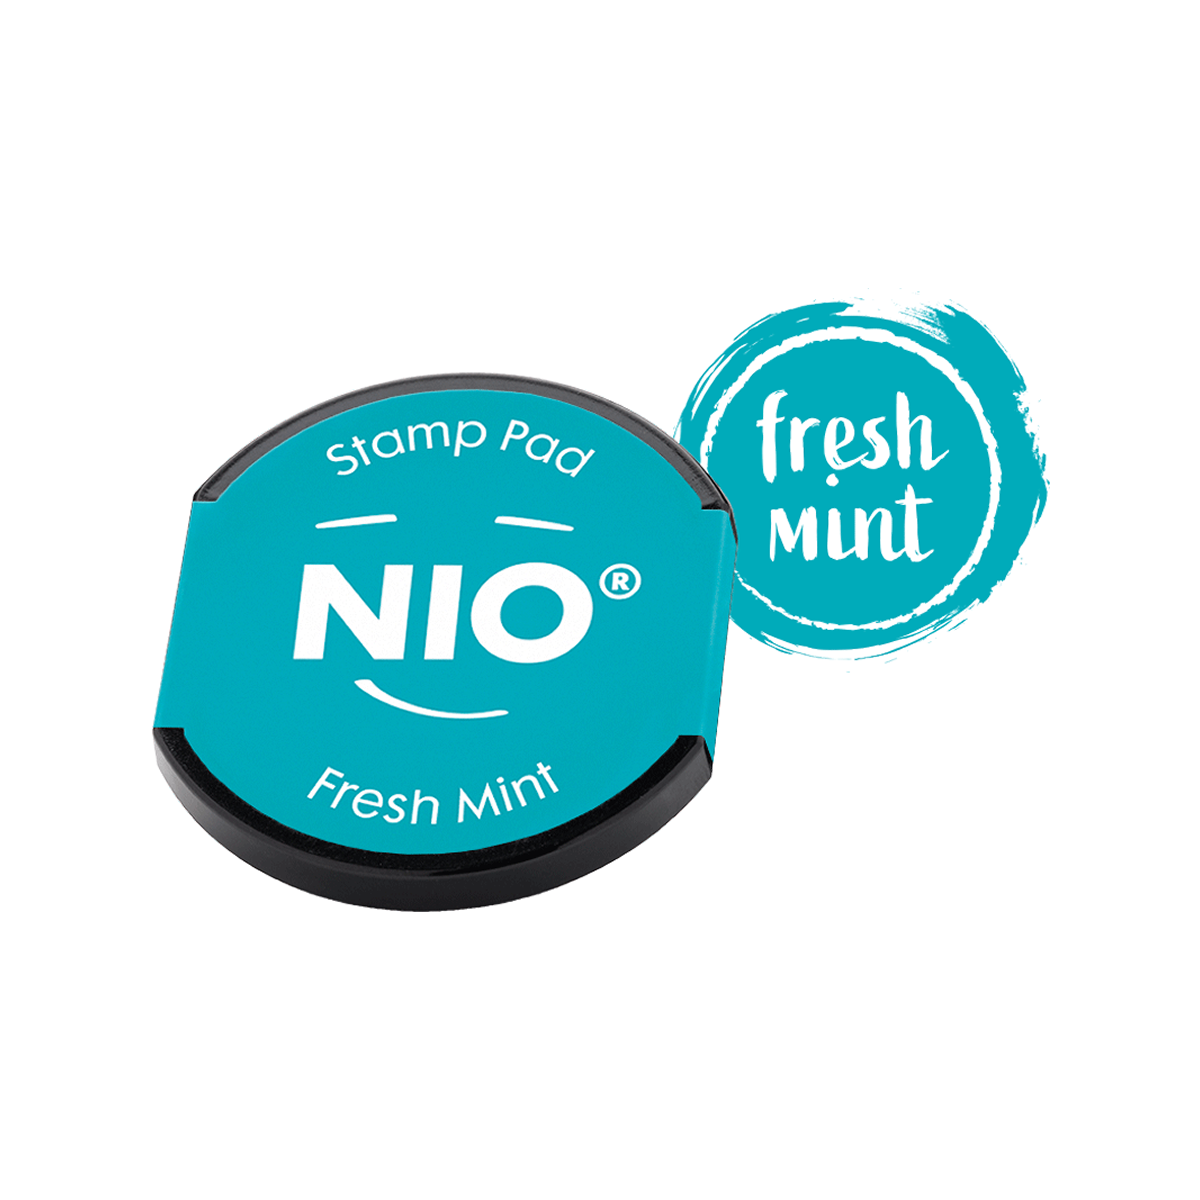 COLOP Arts & Crafts NIO Ταμπόν για Αυτόματη Σφραγίδα Fresh mint